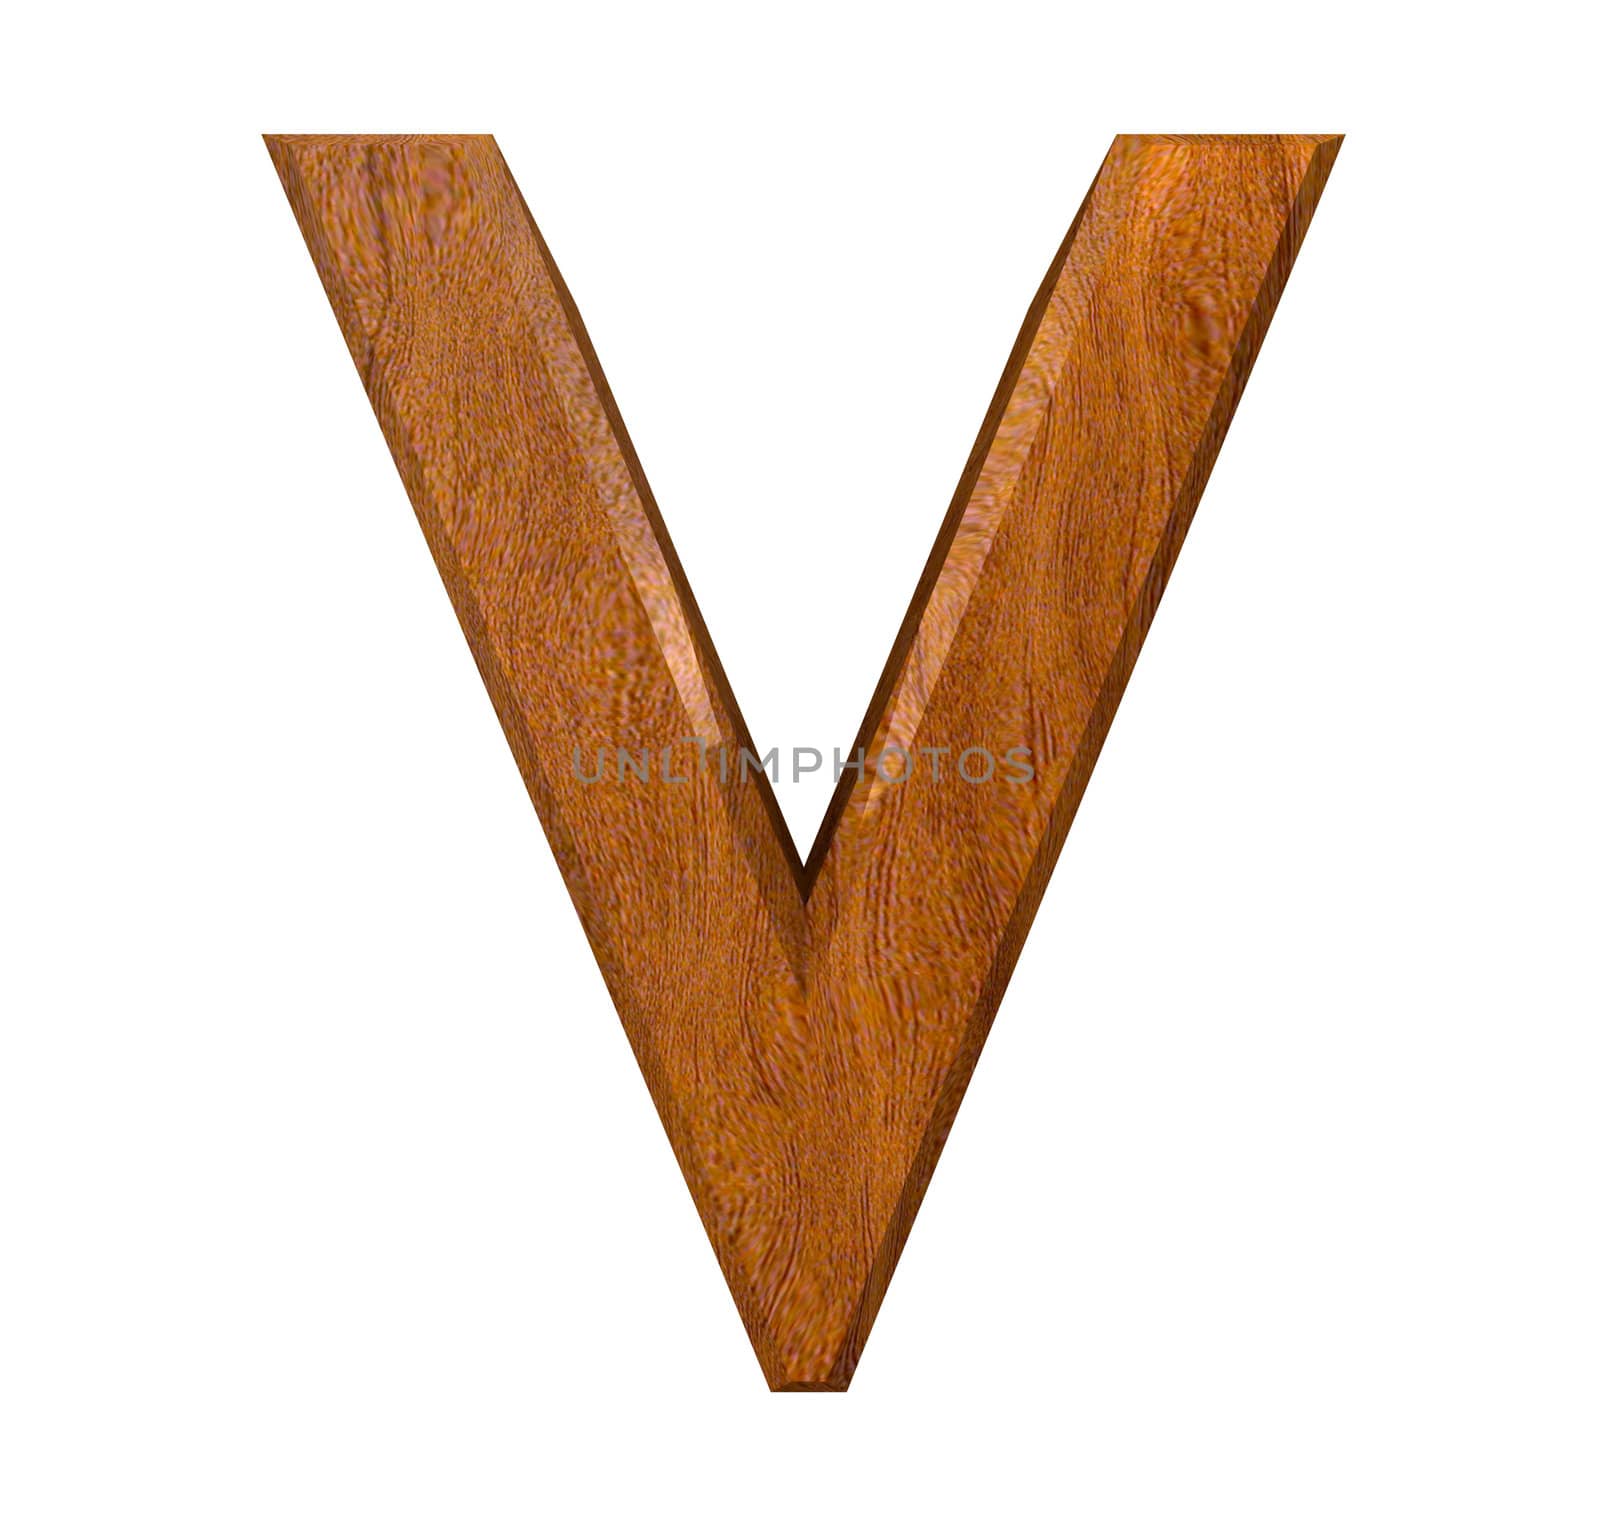 3d letter V in wood - 3d made